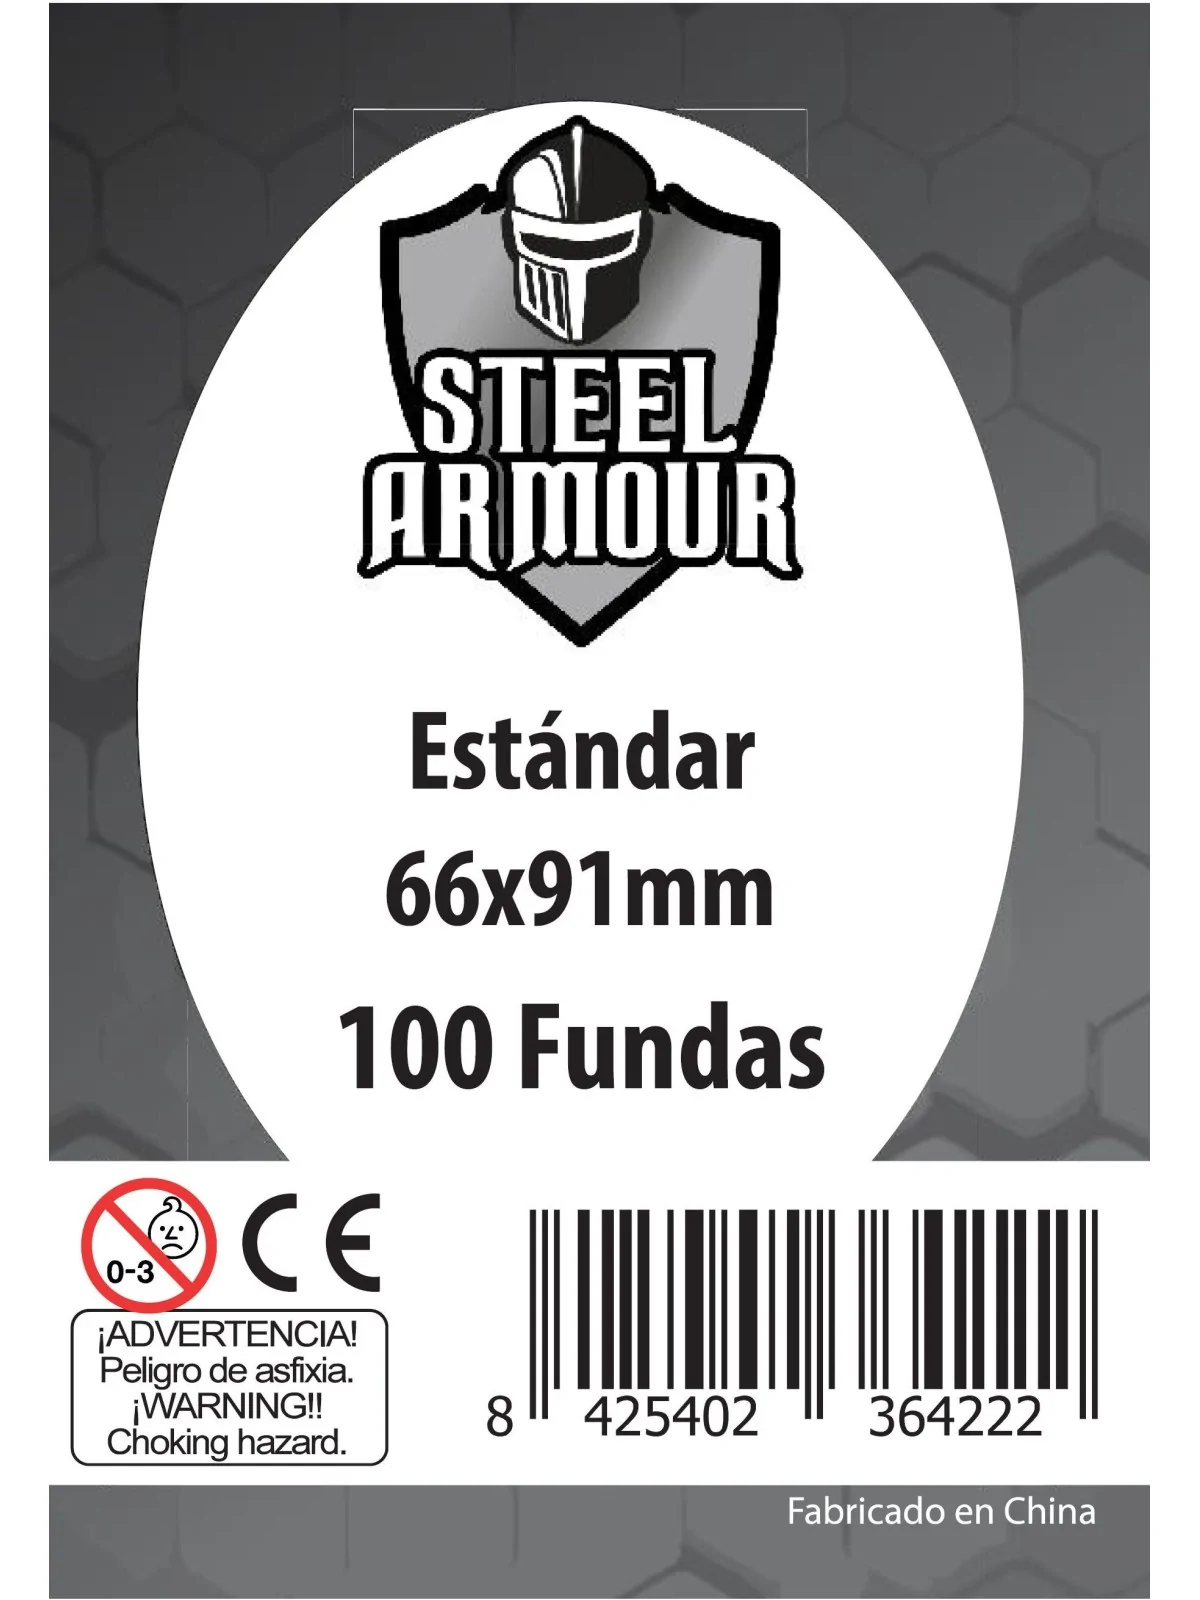 Comprar Steel Armour Estándar (Pack of 100) (66x91mm) barato al mejor 